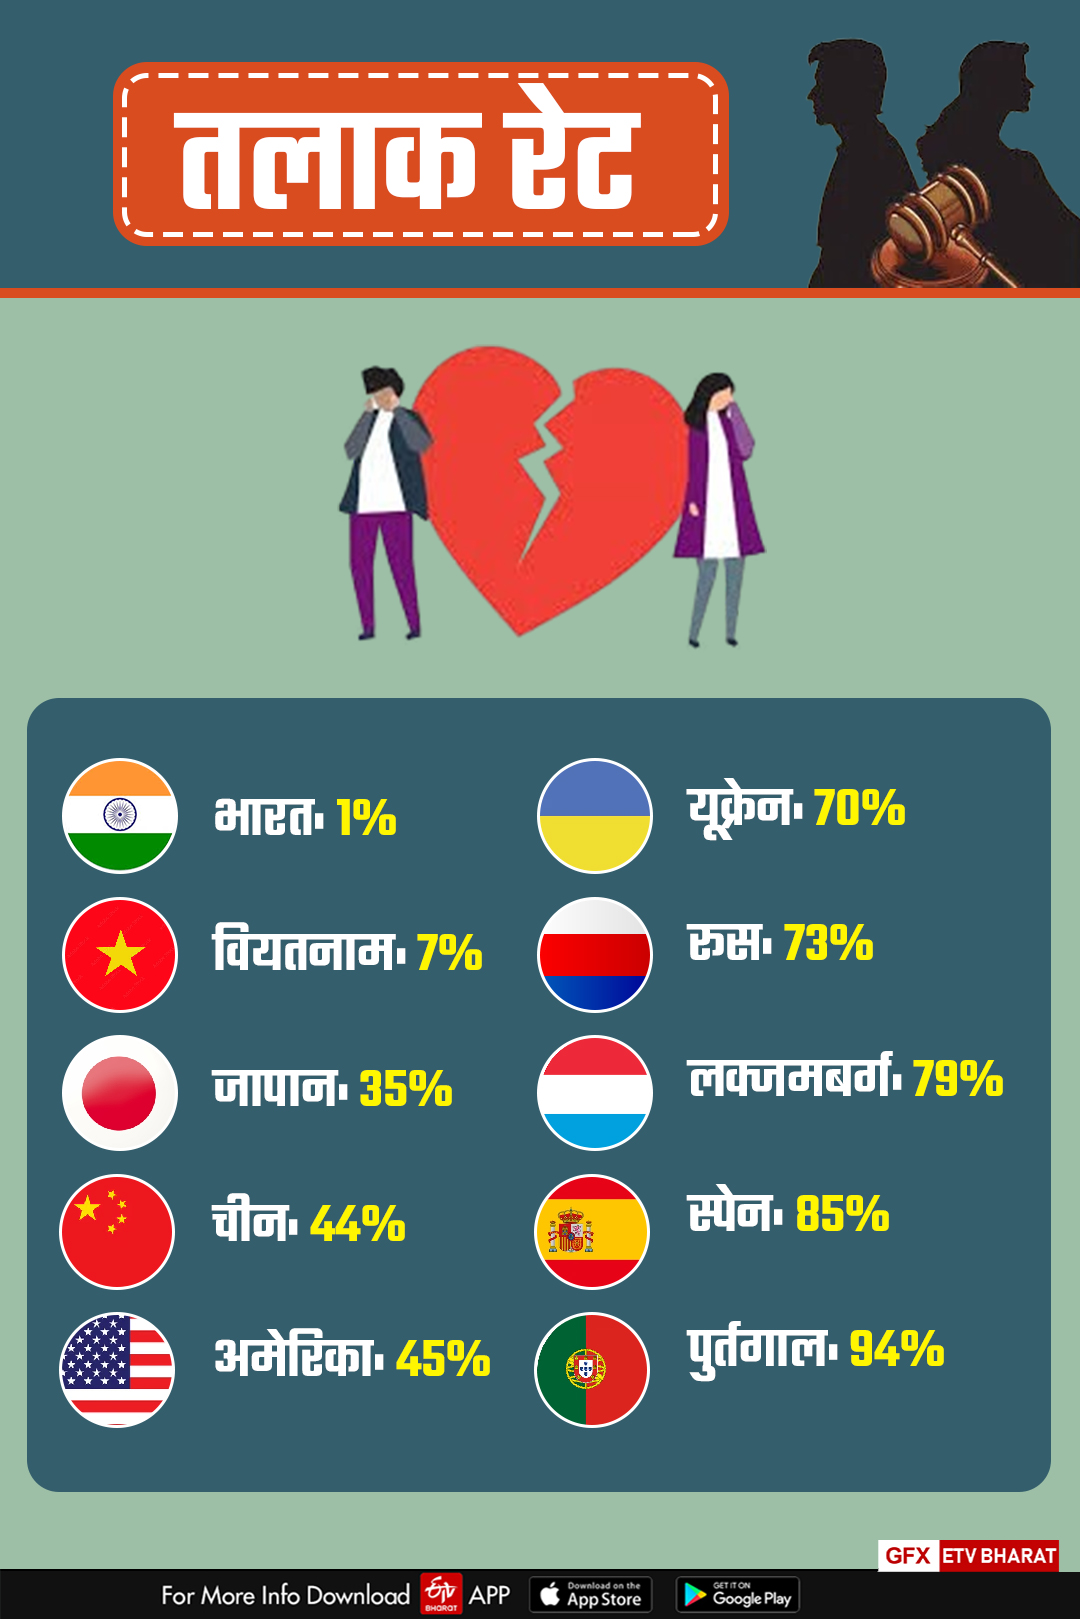 مختلف ملکوں میں طلاق کی شرح